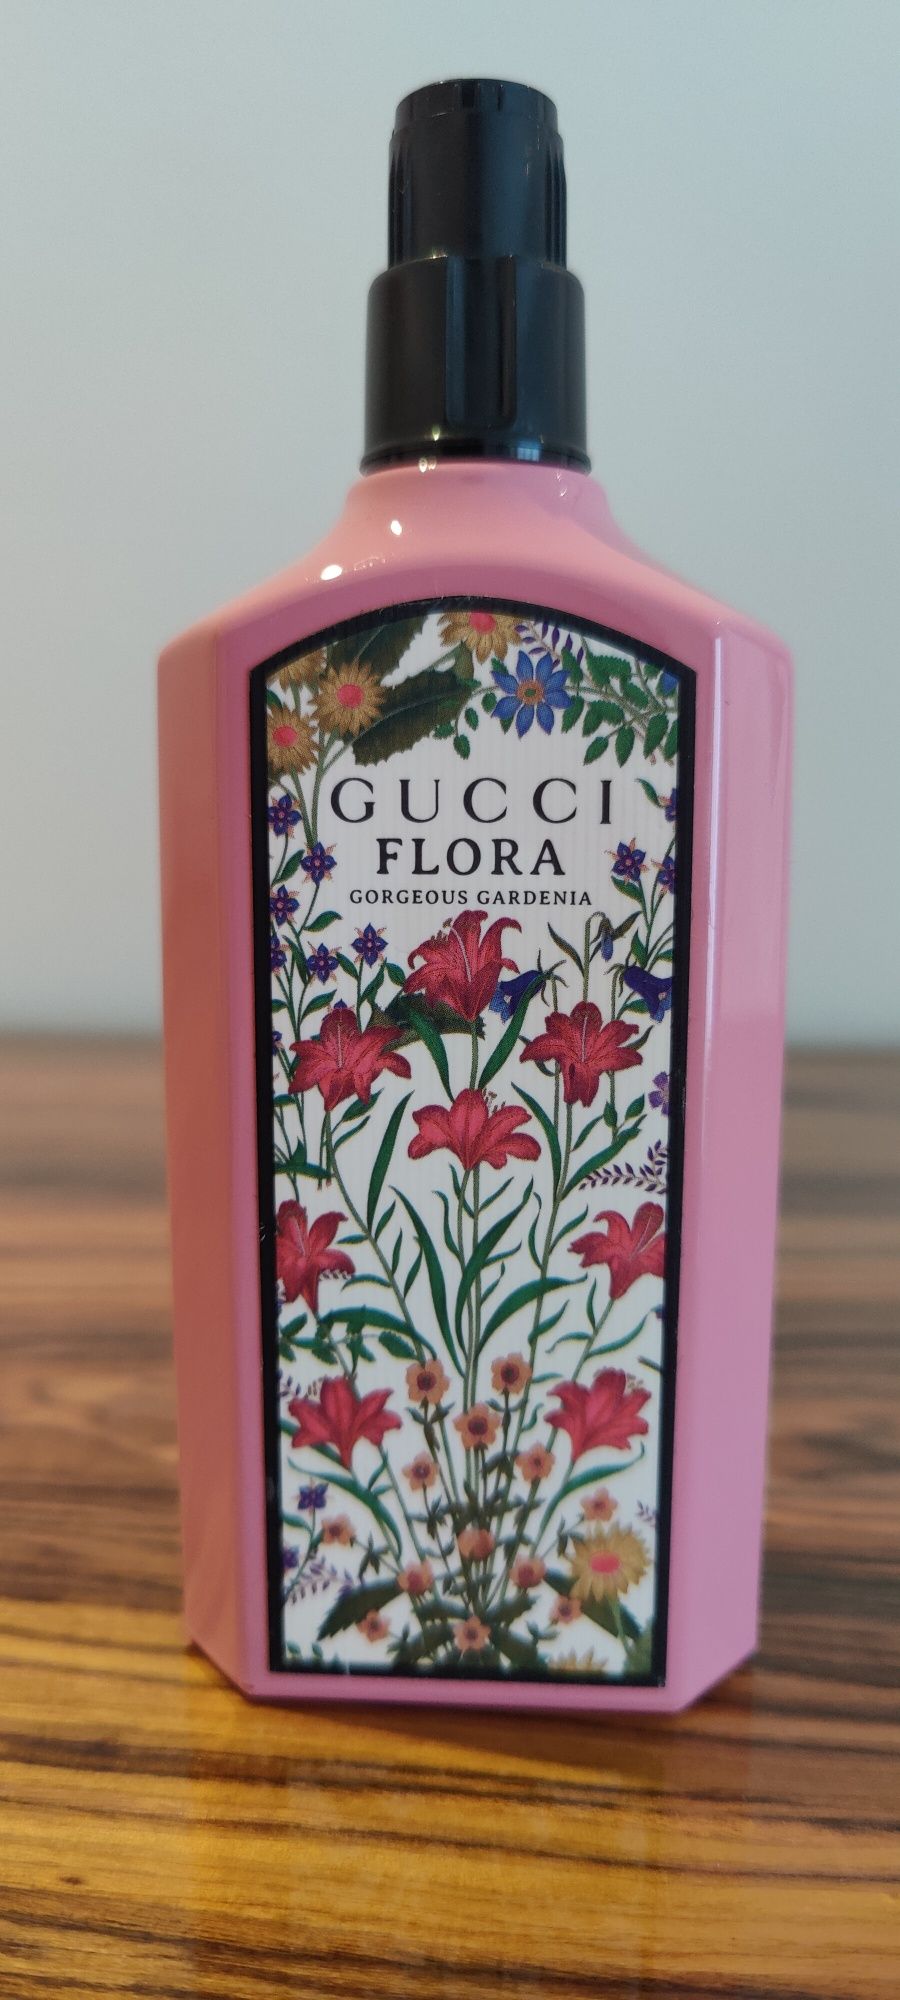 Gucci flora Gorgeous Gardenia 100ml